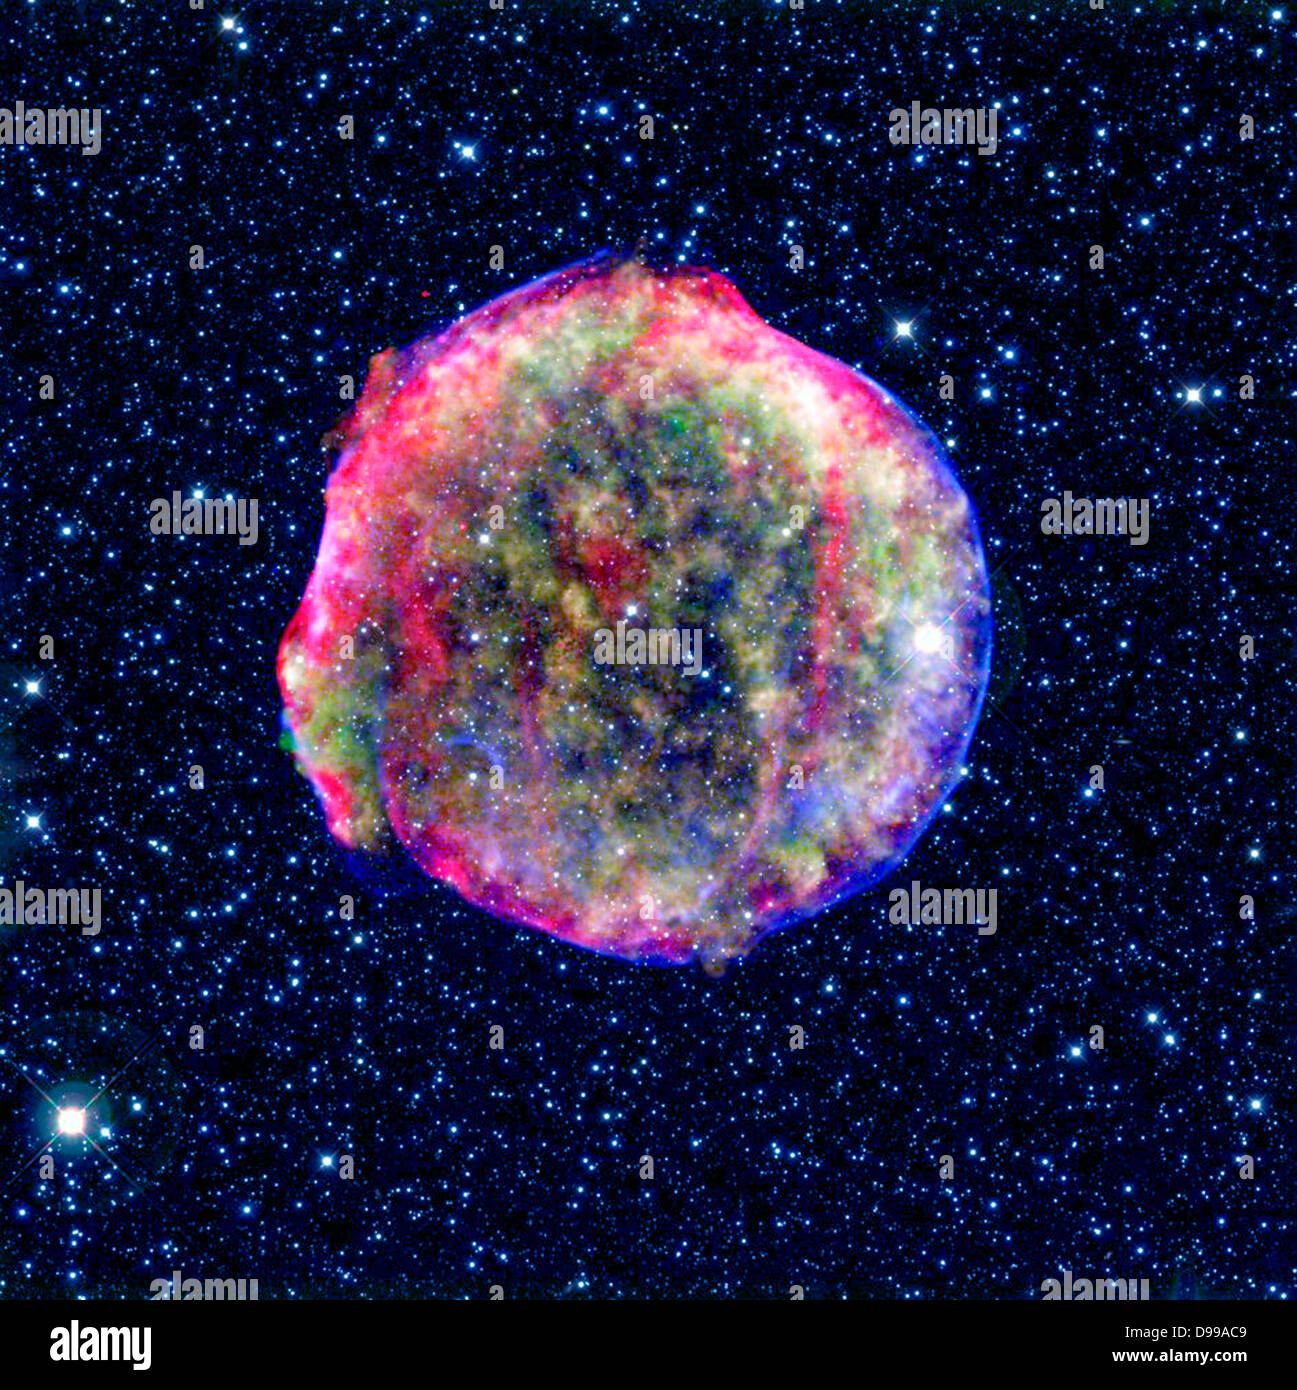 Ein zusammengesetztes Bild der Supernovaüberrest Tycho. Spitzer und Chandra Weltraumobservatorien. Es zeigt die Szene mehr als vier Jahrhunderte nach der Star Explosion. Stockfoto